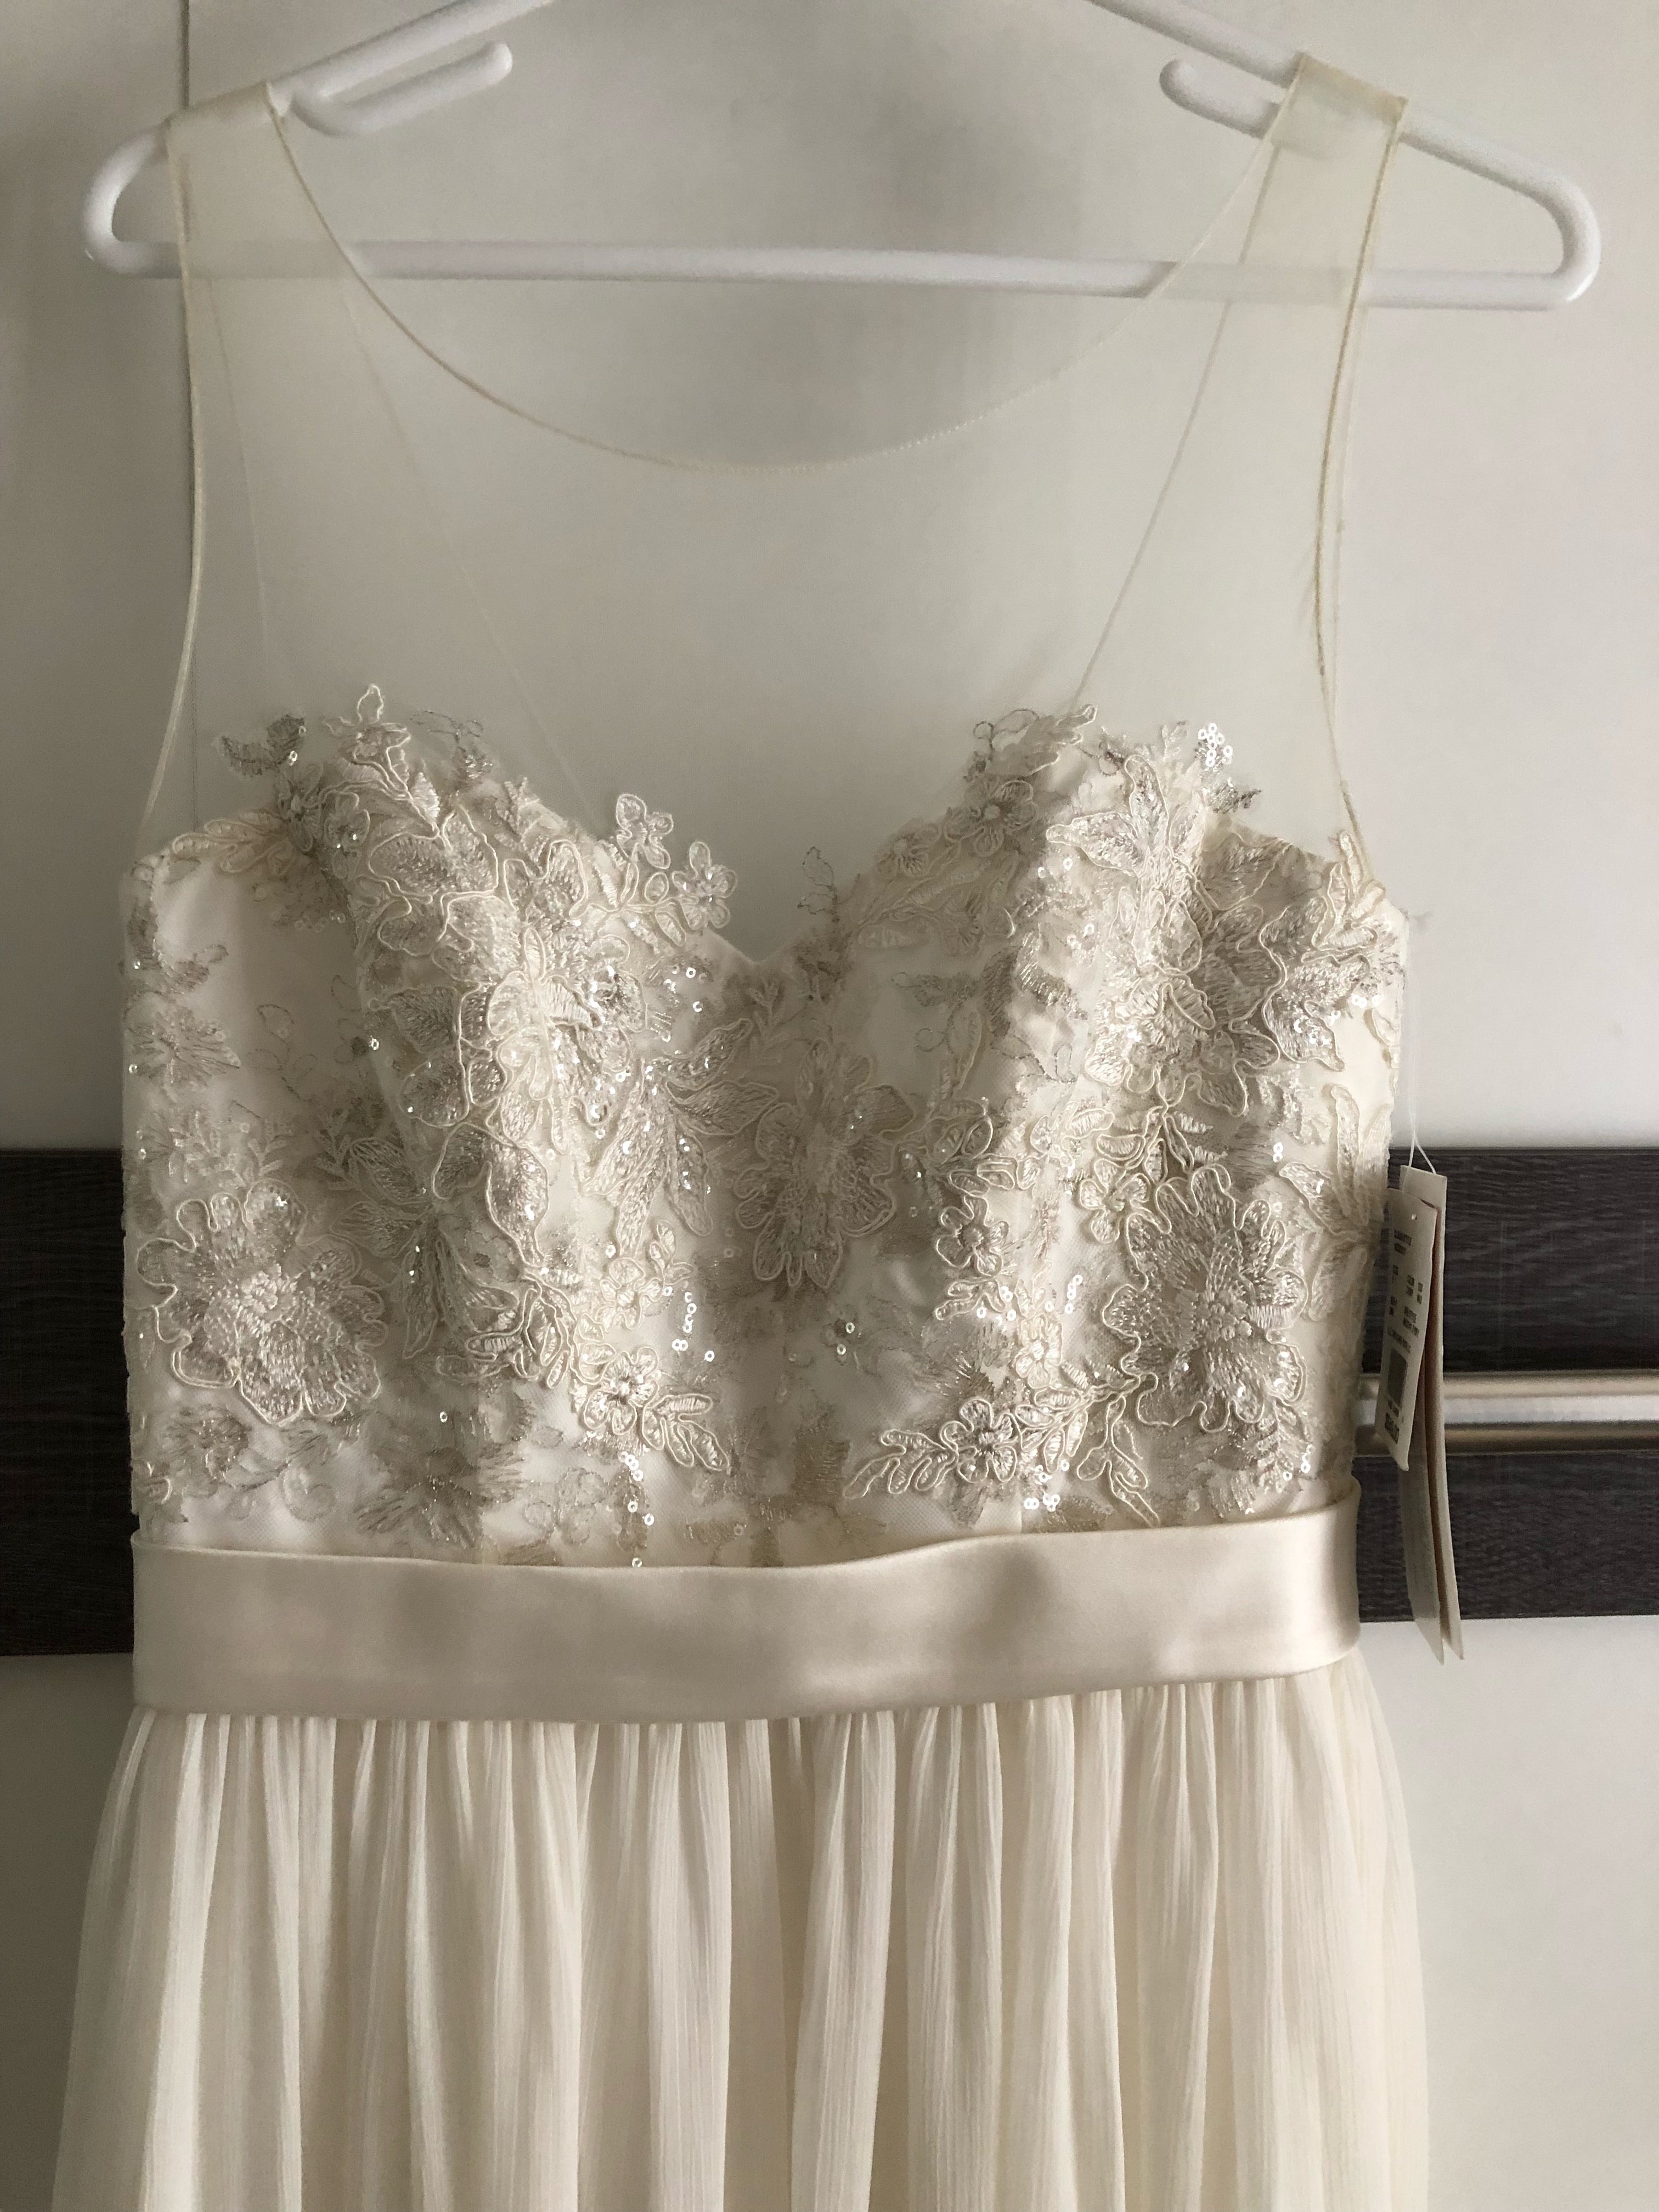 David's Bridal 'Illusion' size 6 new wedding dress – Nearly Newlywed